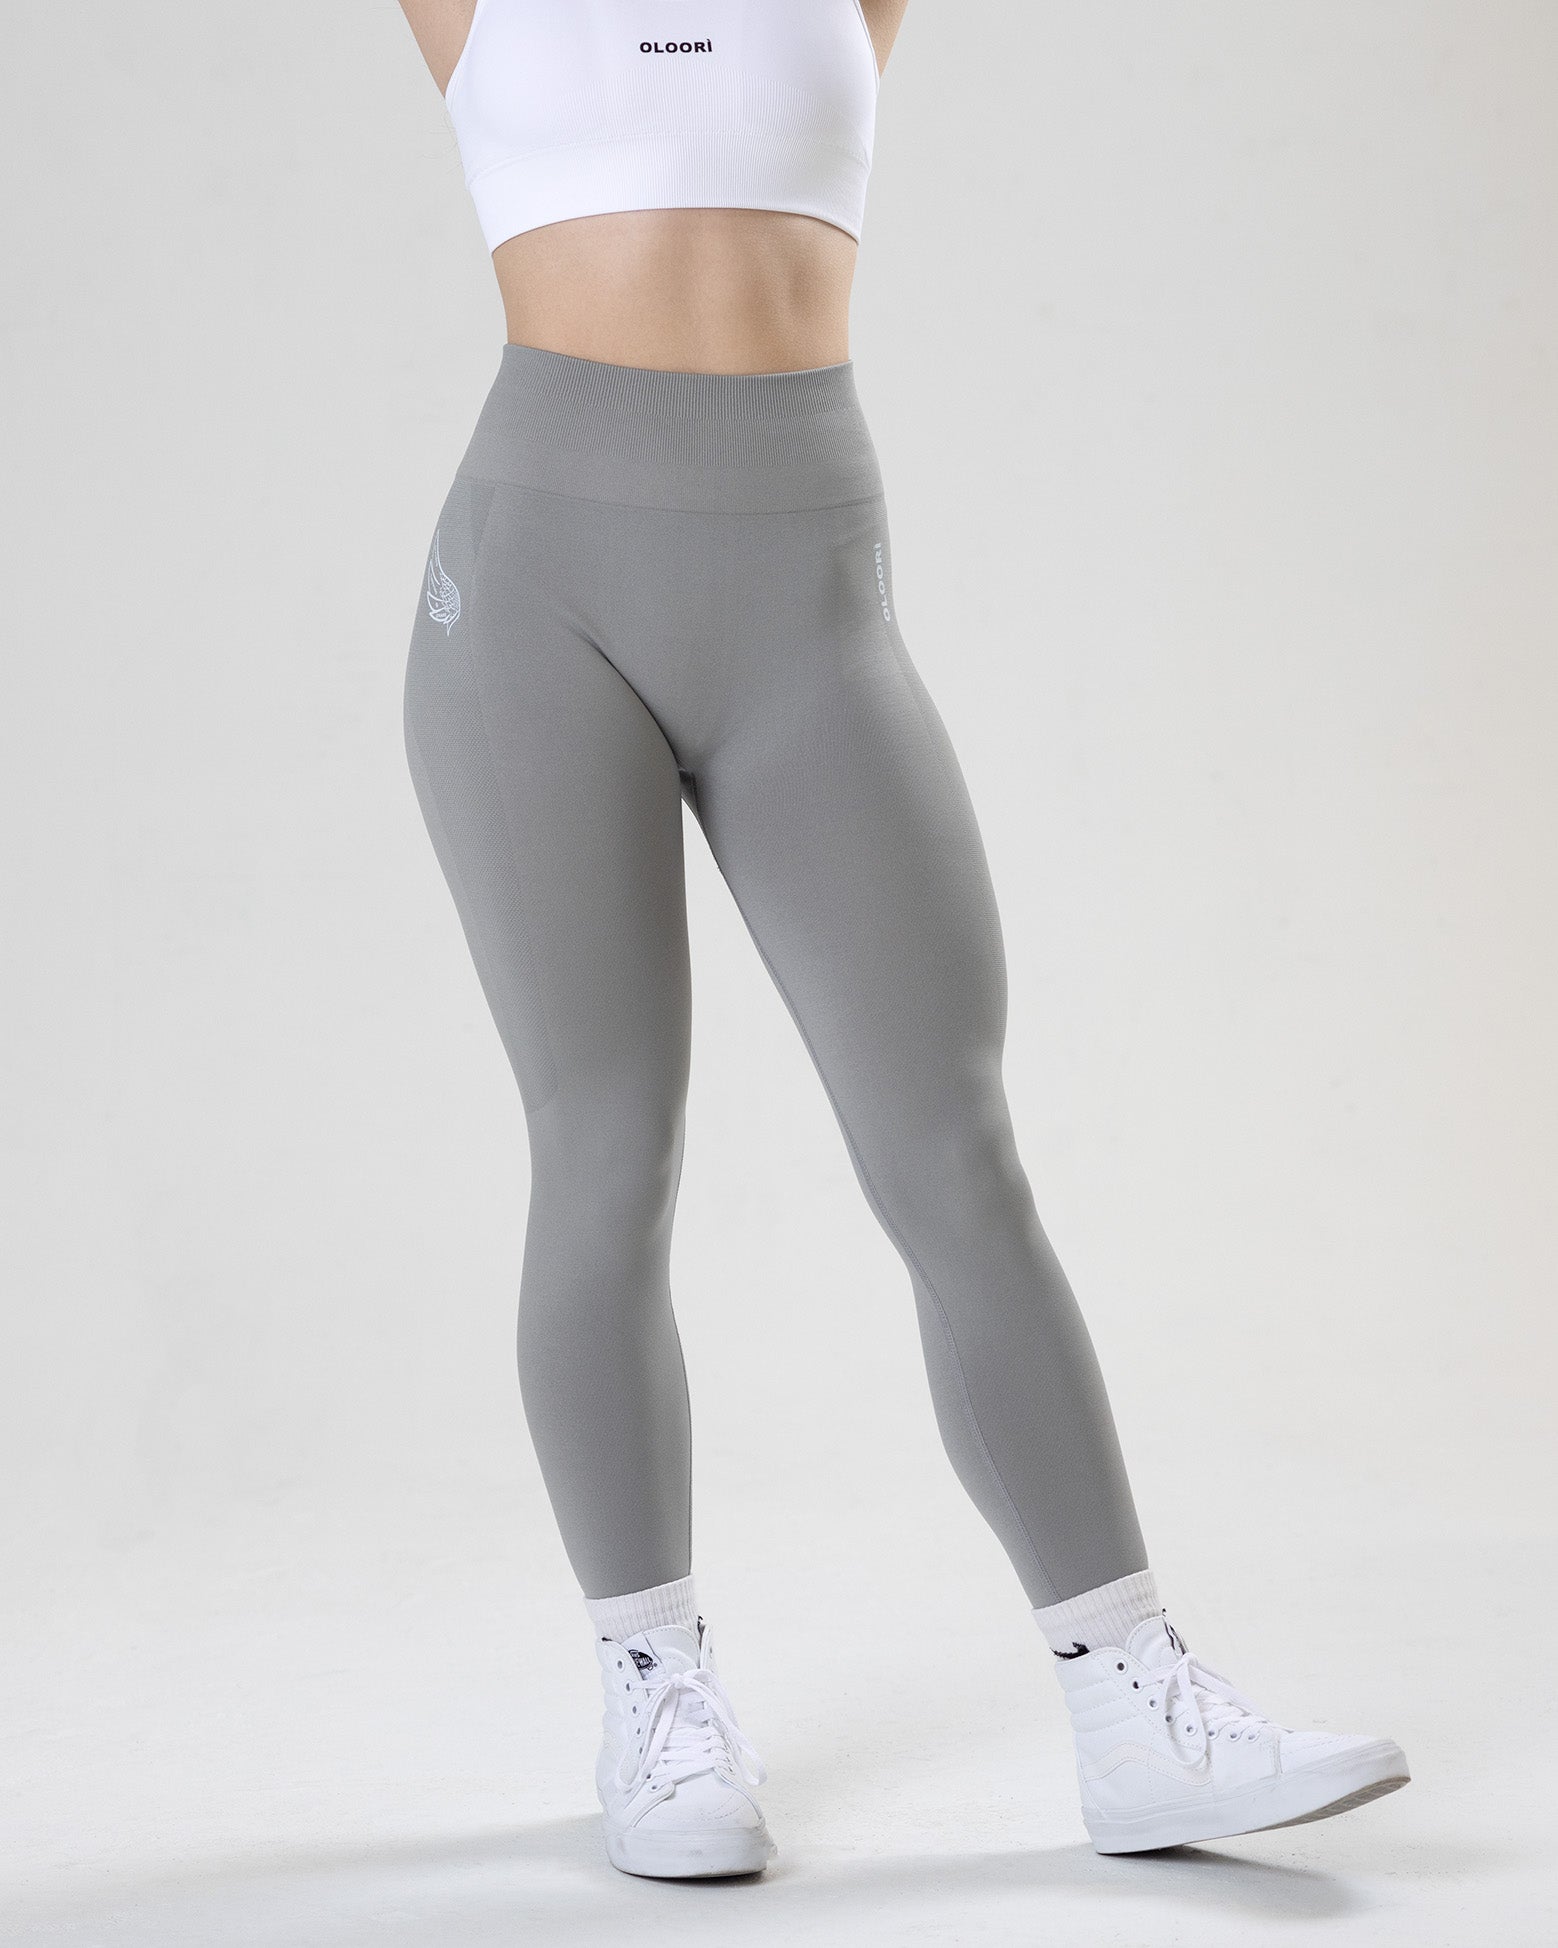 Spawn Fitness Yoga Pants TikTok Leggings for Women Scrunch Butt Lift Gray  XS 